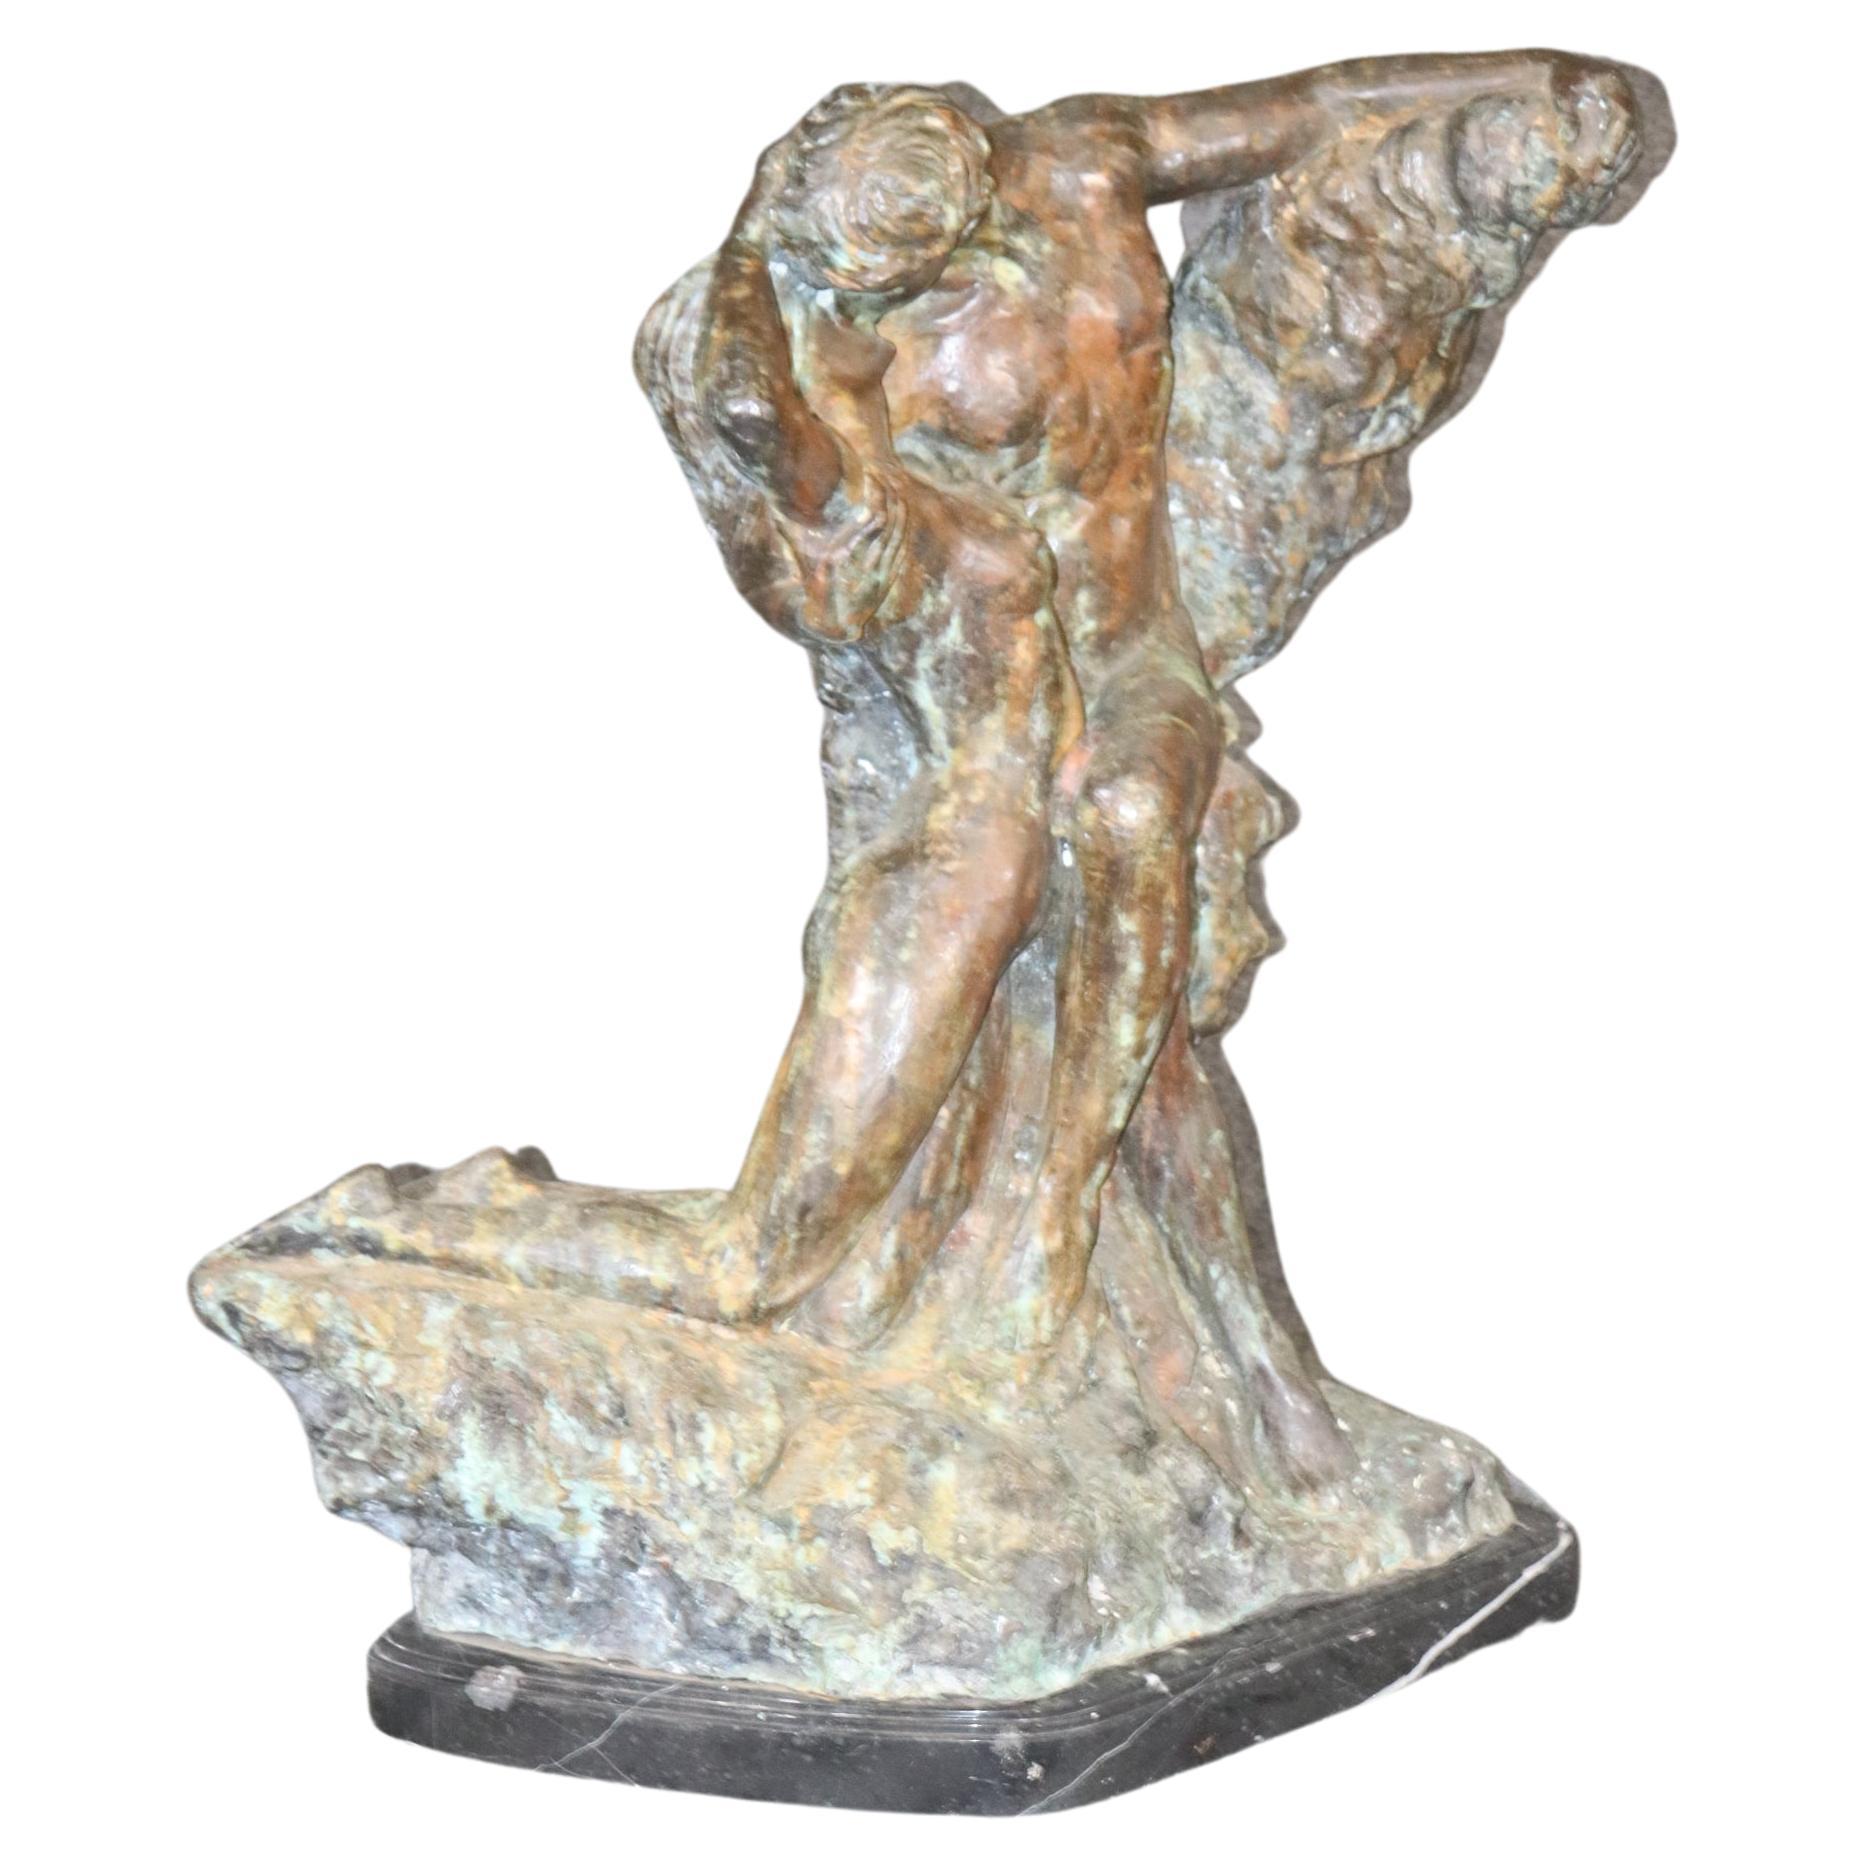 Grand bronze d'Auguste Rodin de « La bague », copie exacte de l'original